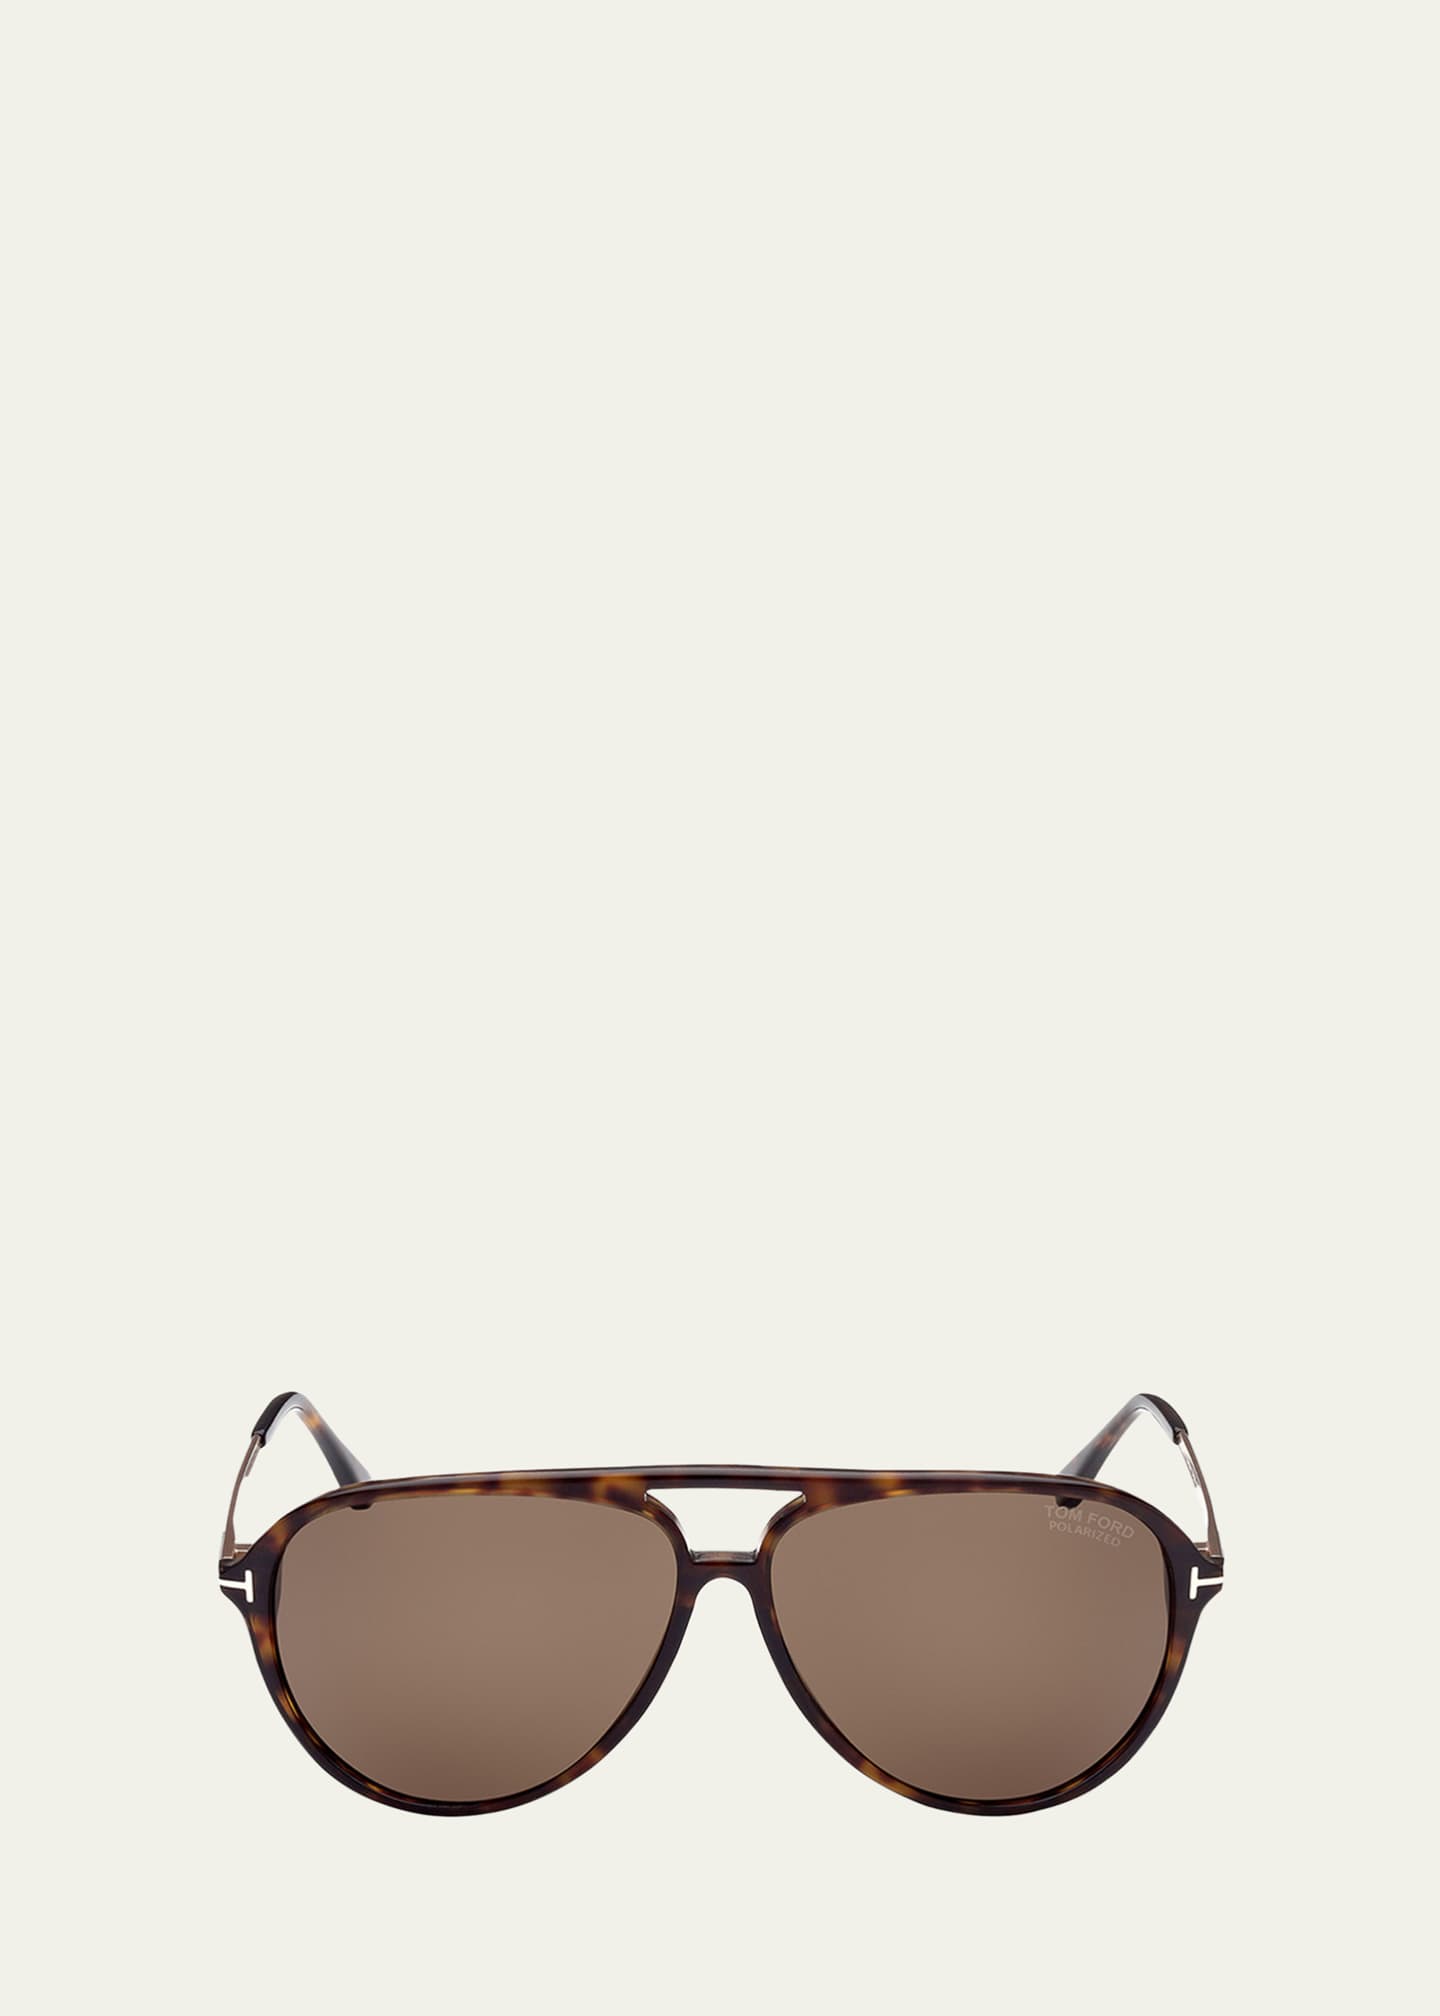 Tom Ford Men's Aviator-Style Sunglasses